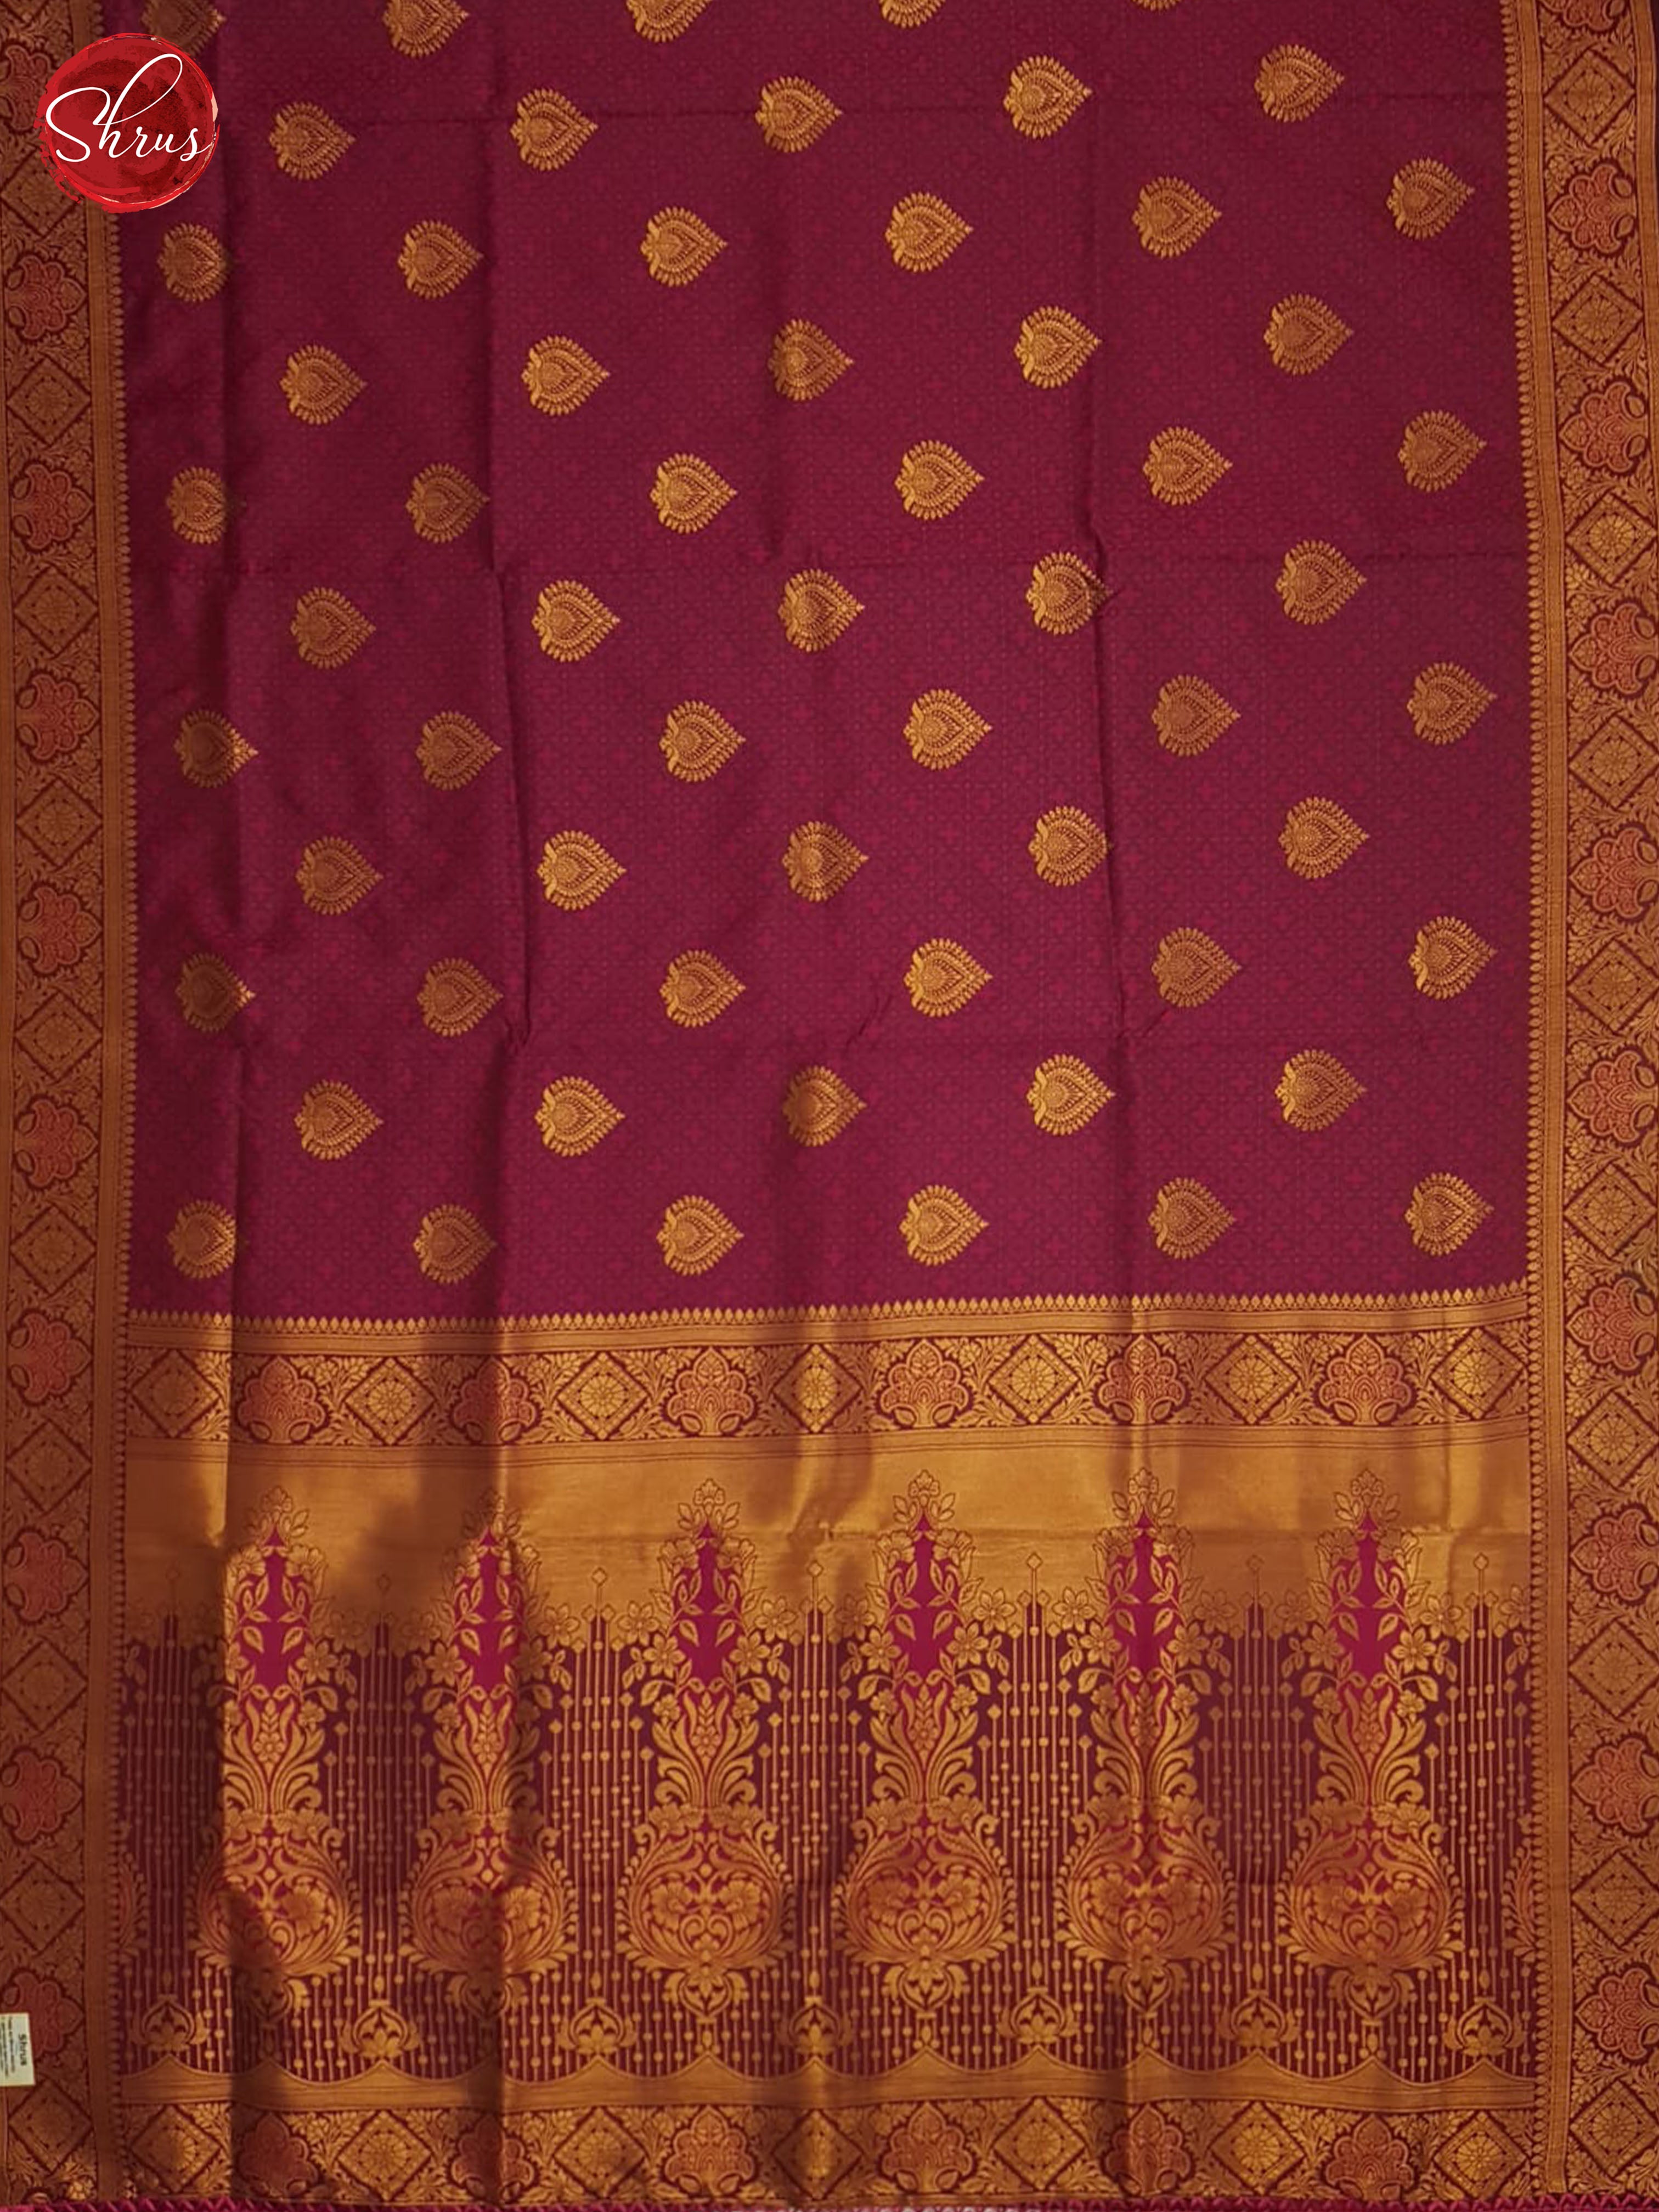 Majenta Pink(single tone)- Semi Kanchipuram saree - Shop on ShrusEternity.com